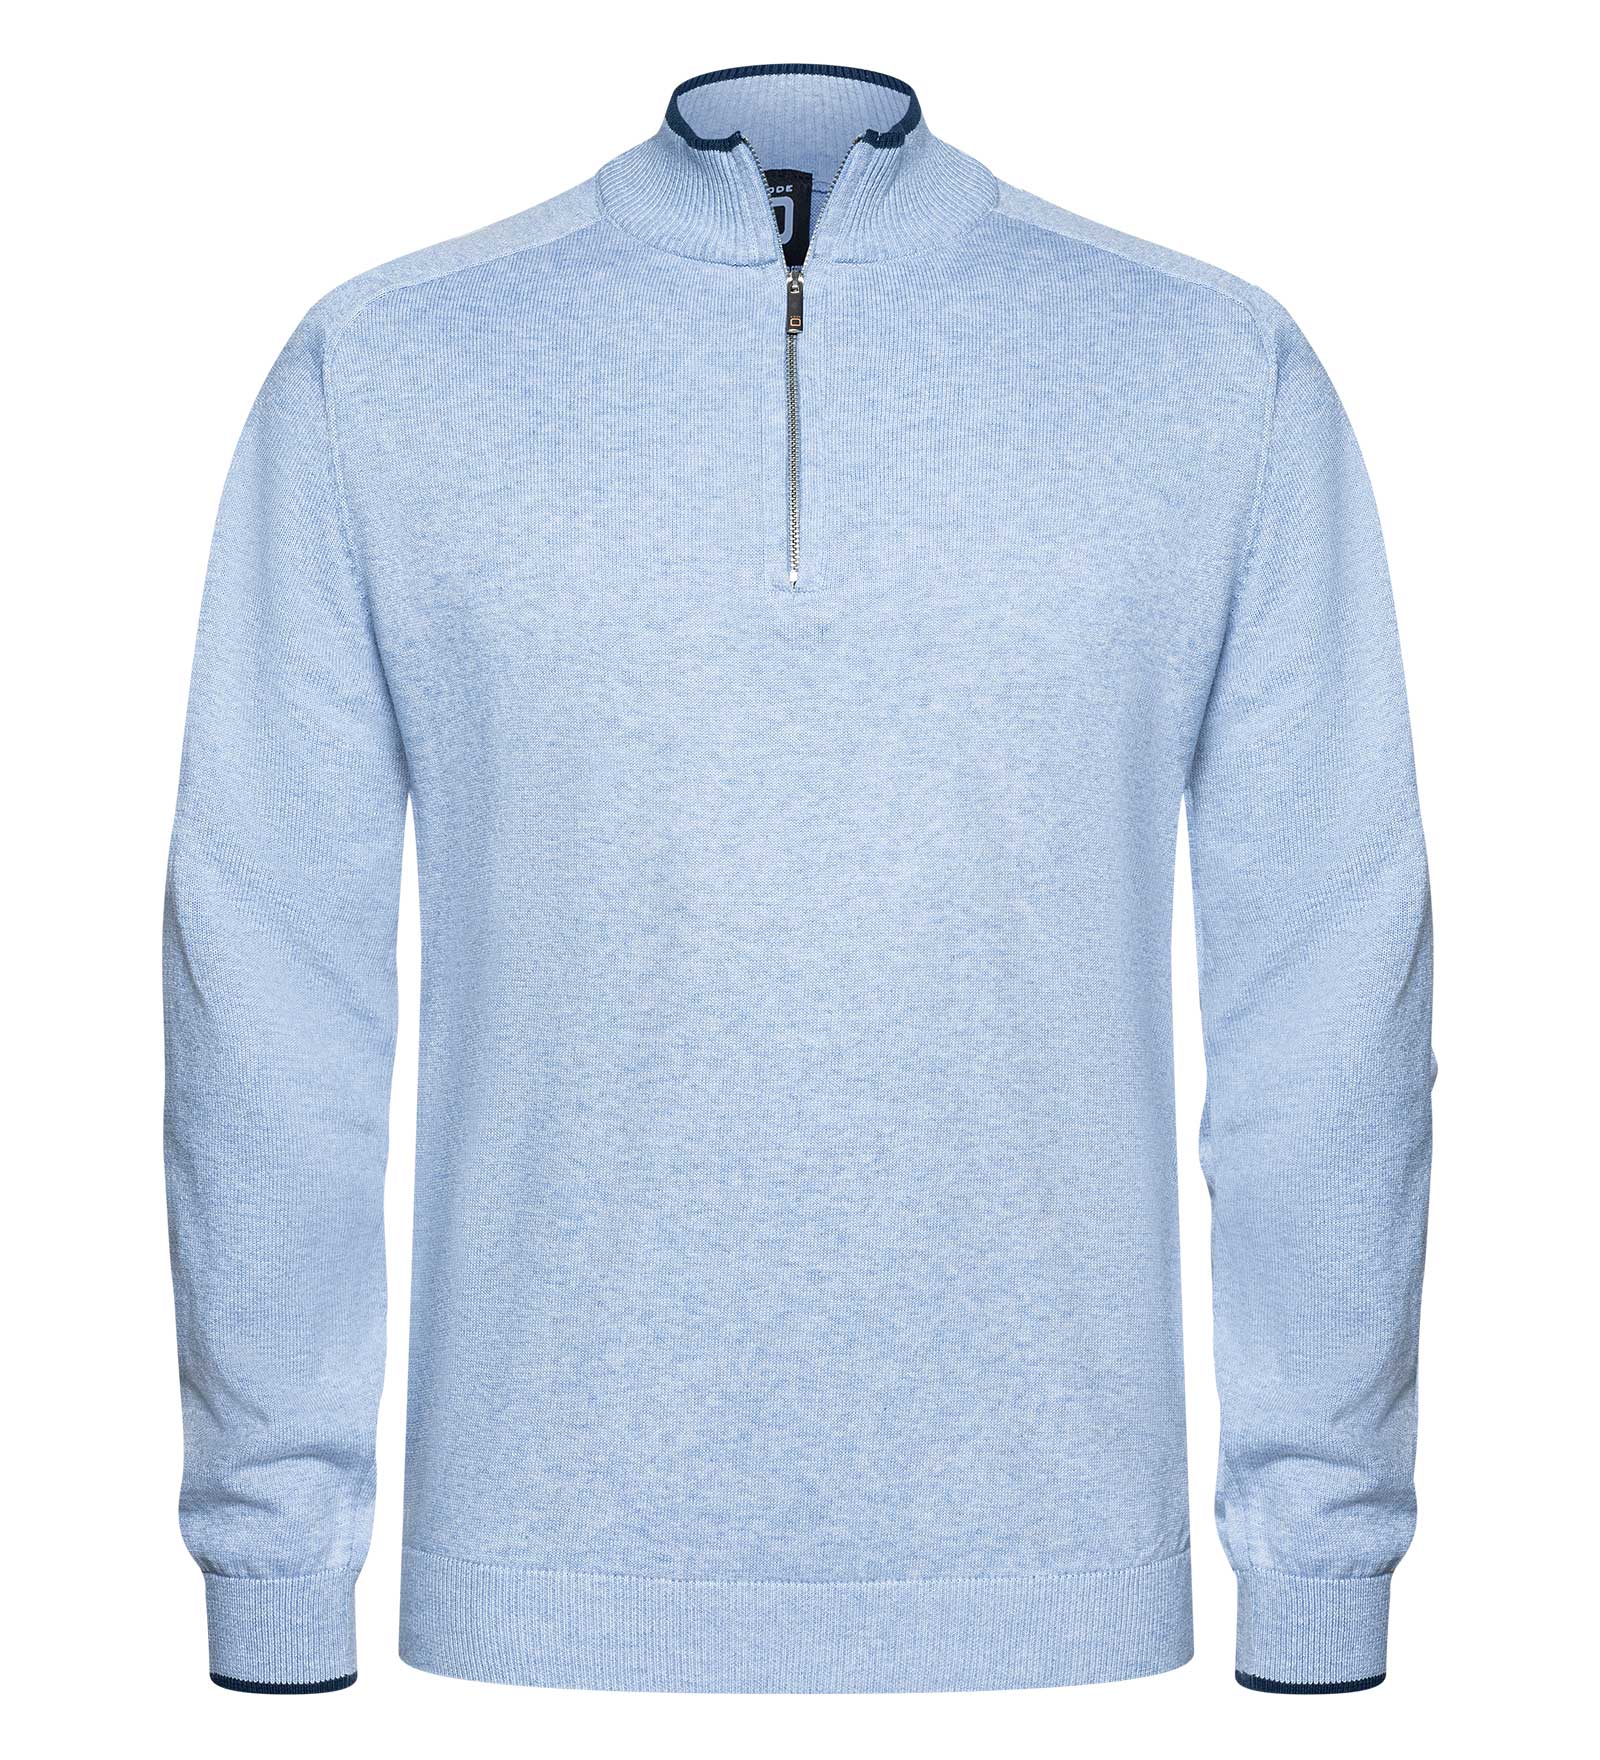 Pullover Herren Rigging blau XL CODE-ZERO von CODE-ZERO